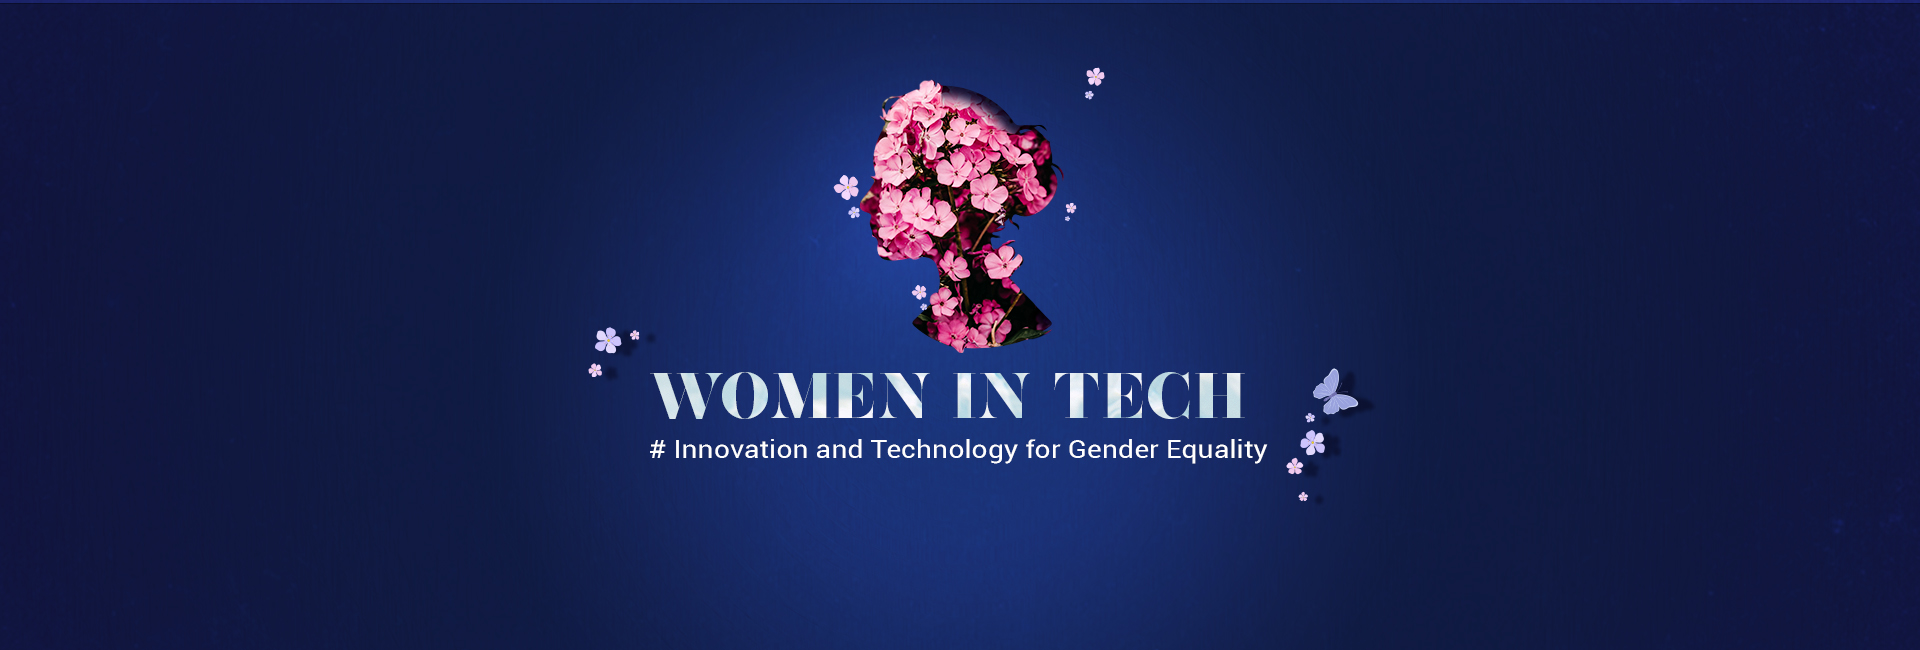 women in tech cover